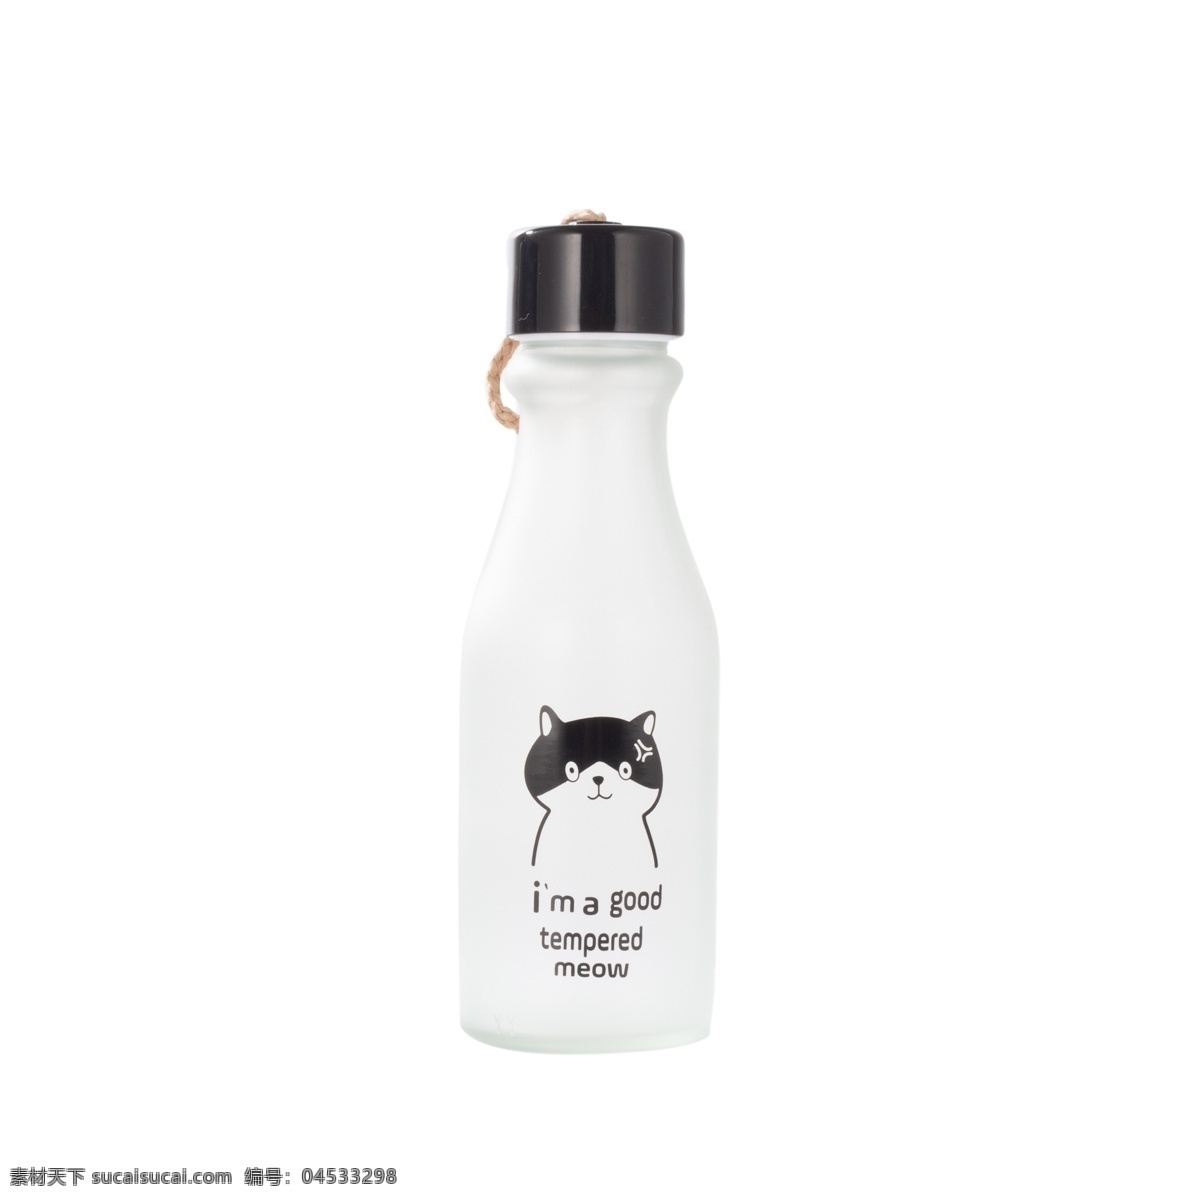 白色 可爱 饮料 瓶子 元素 创意 小黑猫 耳朵 光泽 质感 装饰 纹理 闪光 瓶盖 味道 鼻子 绳子 悬挂